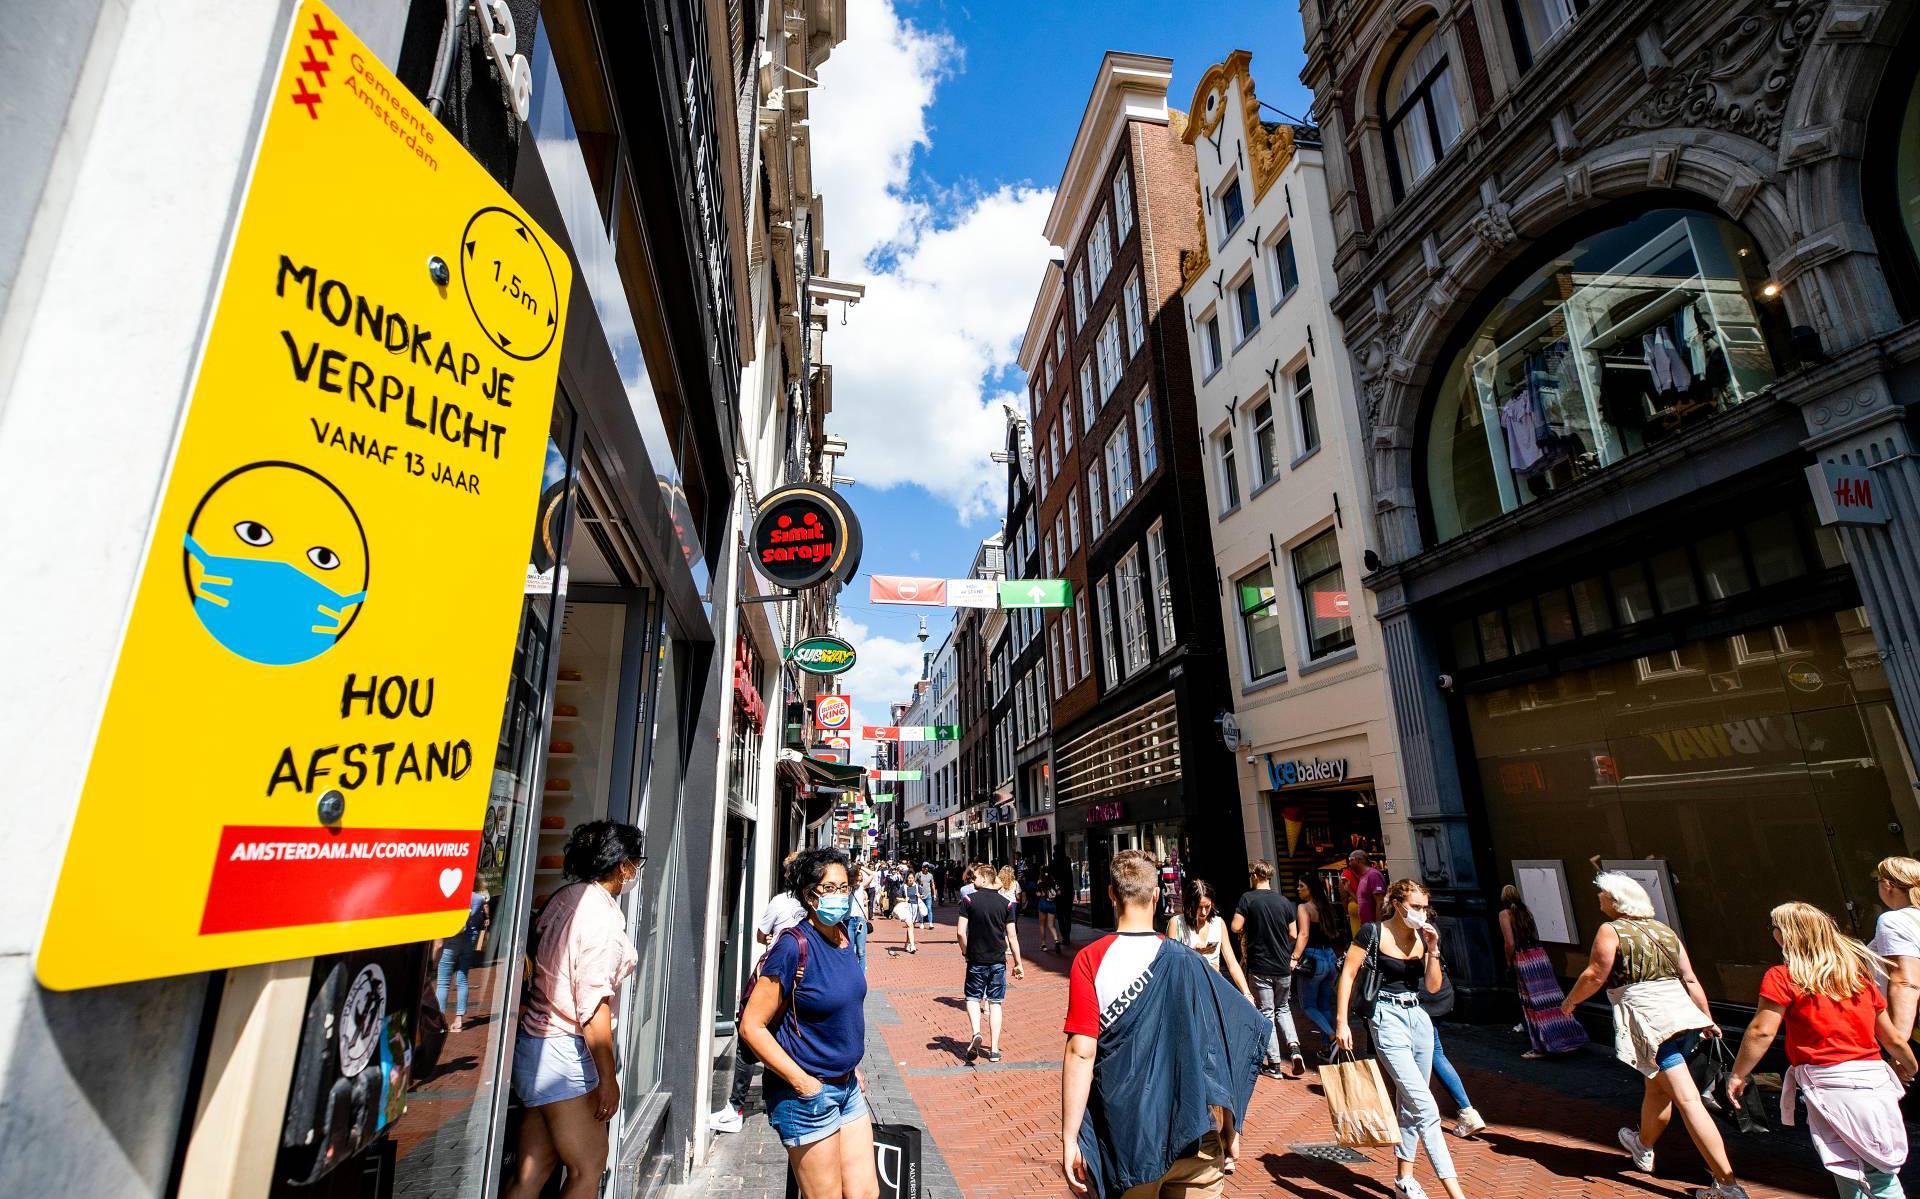 Amsterdam en Rotterdam: niet gelijk boete bij ontbreken mondkapje